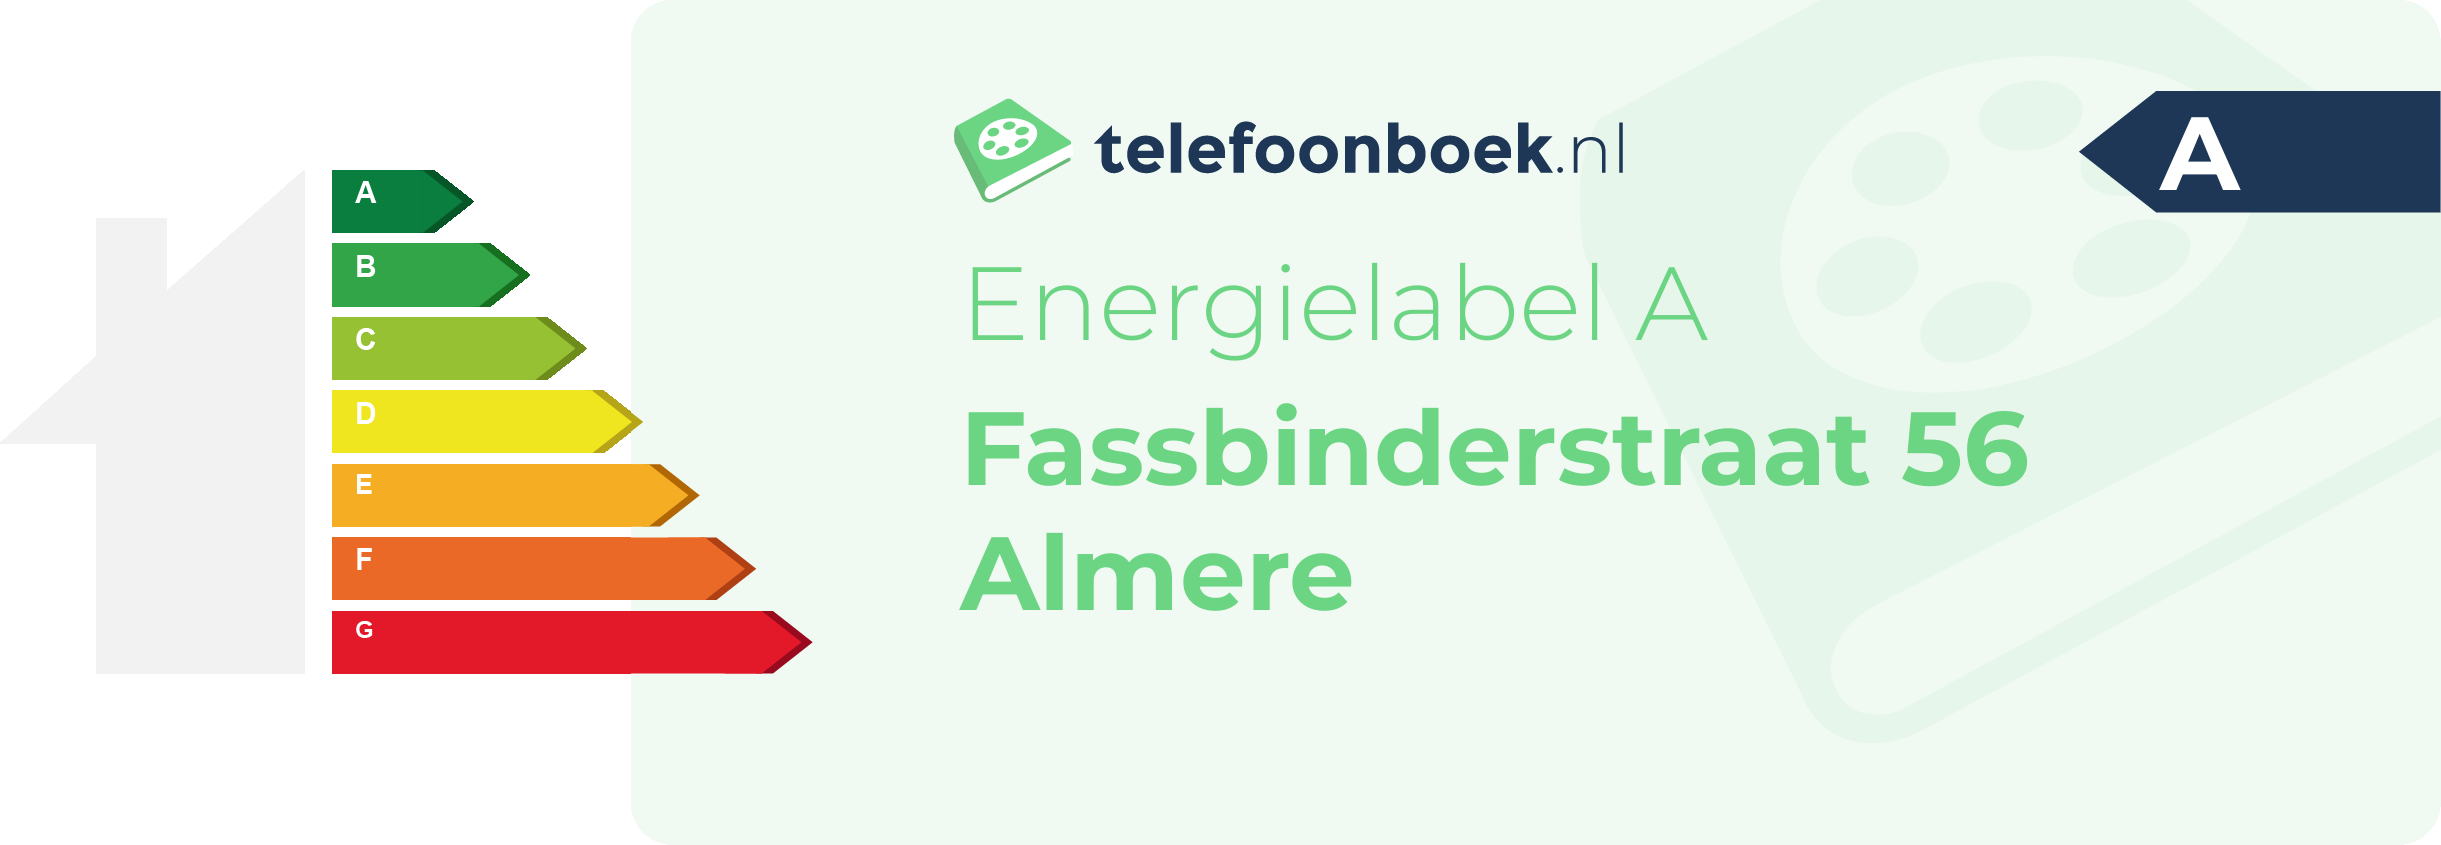 Energielabel Fassbinderstraat 56 Almere